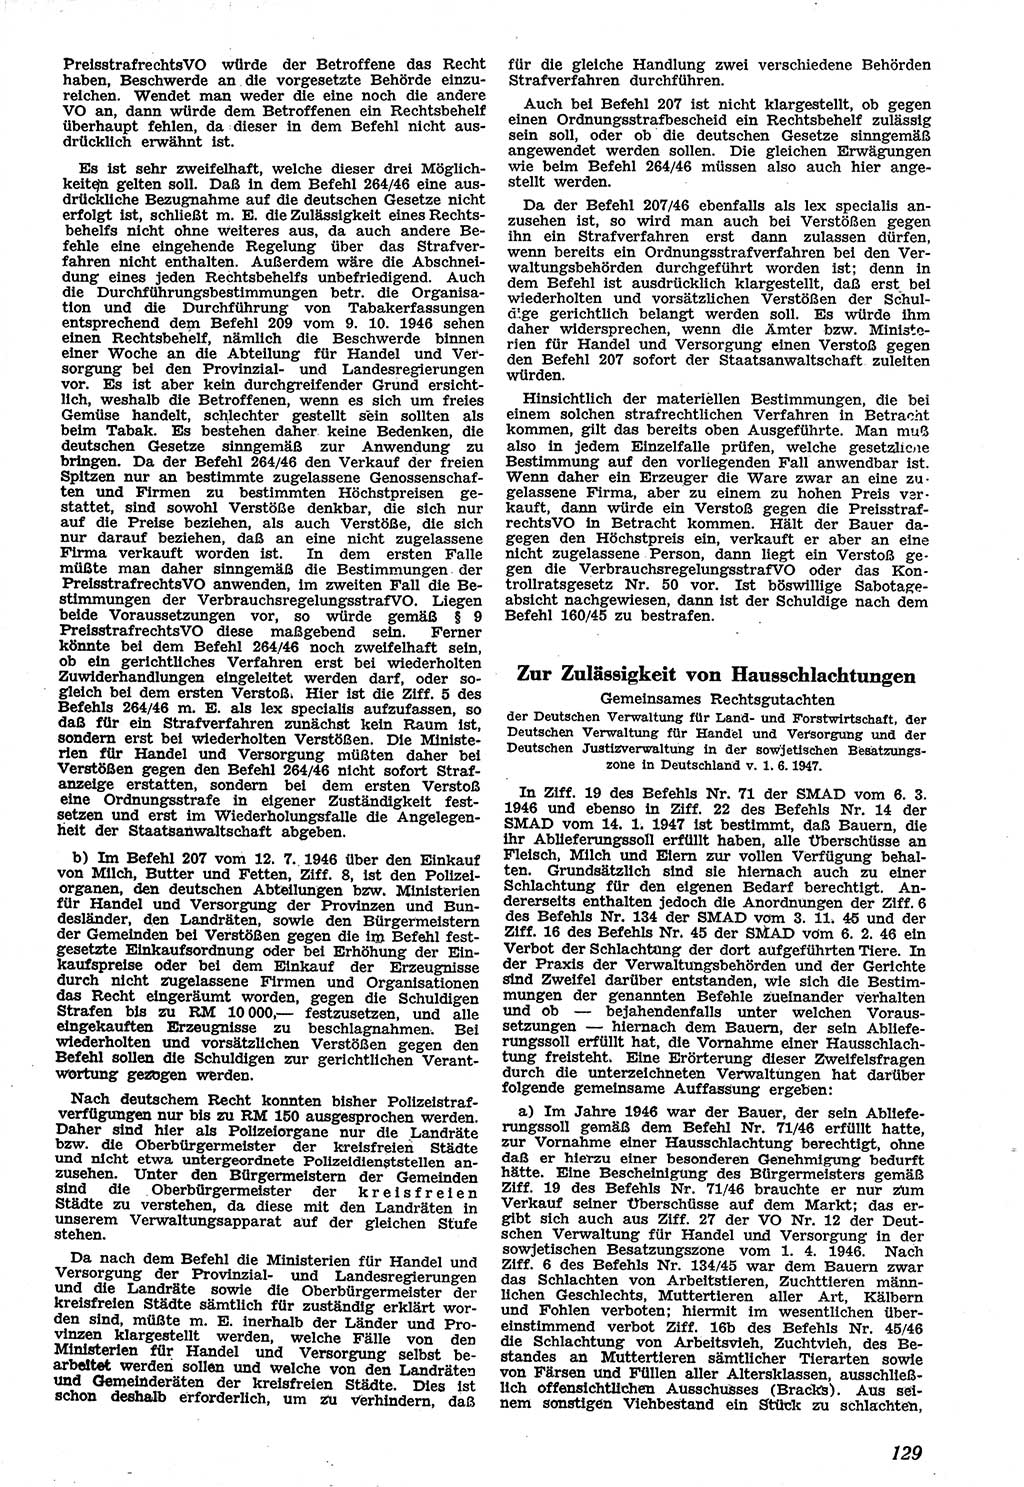 Neue Justiz (NJ), Zeitschrift für Recht und Rechtswissenschaft [Sowjetische Besatzungszone (SBZ) Deutschland], 1. Jahrgang 1947, Seite 129 (NJ SBZ Dtl. 1947, S. 129)